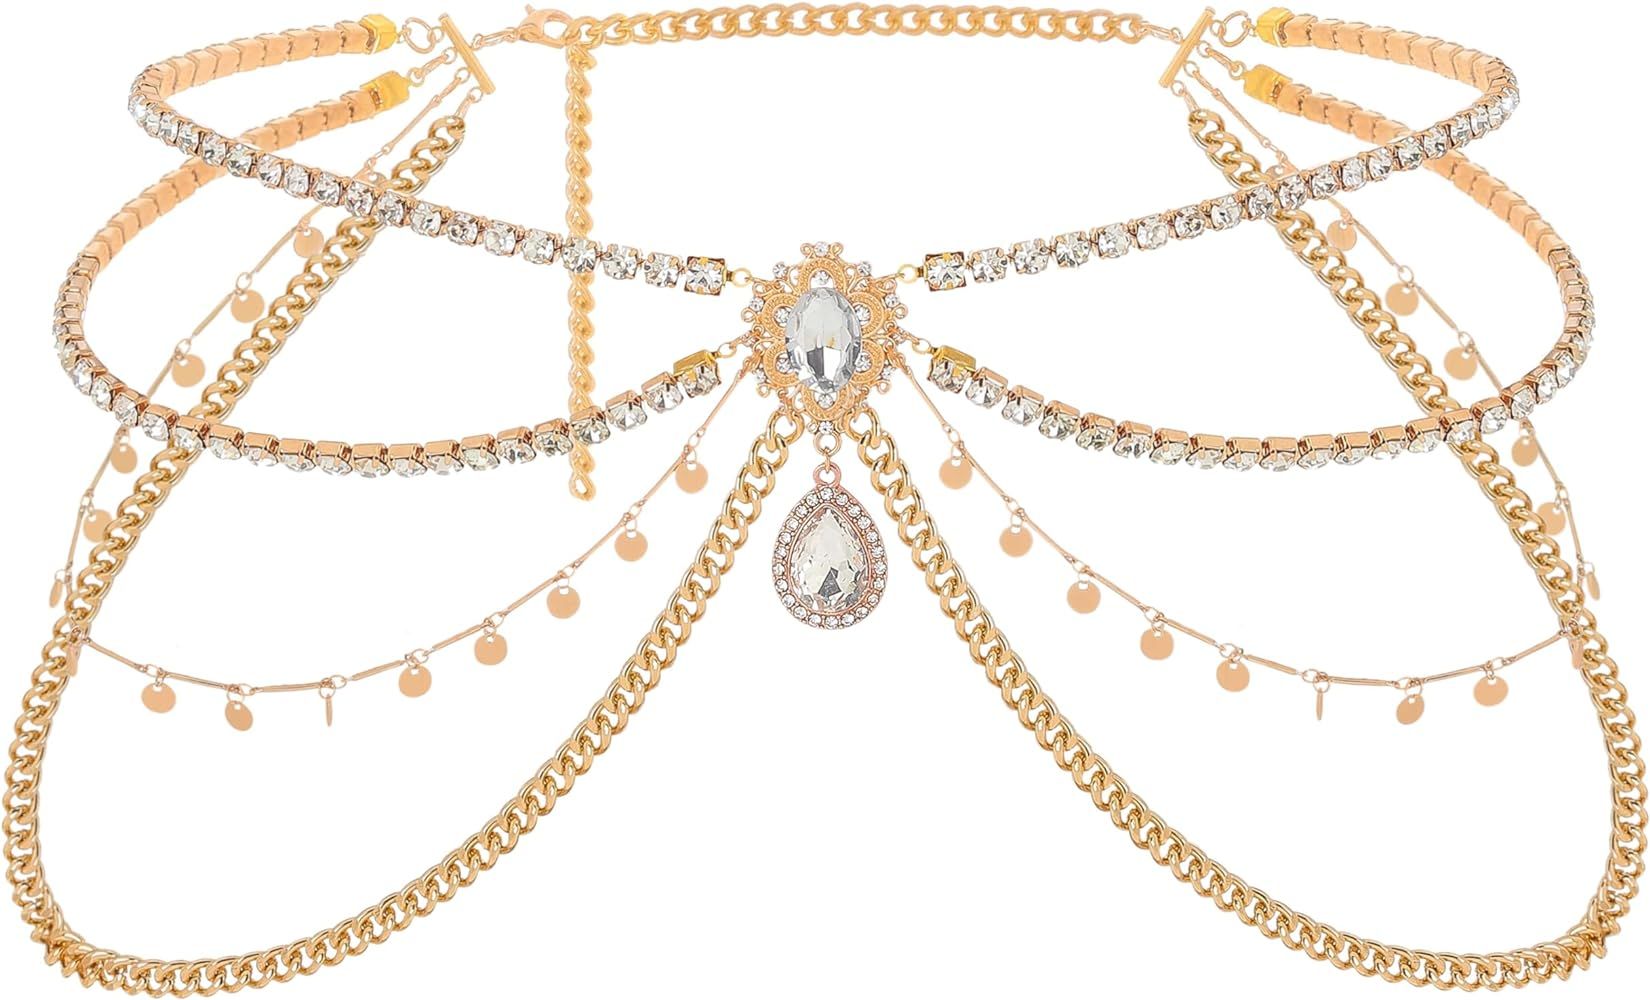 ELABEST Rhinestone Layered Chain Belt Sequin Waist Chain Body Chain Jewelry for Women and Girls | Amazon (US)